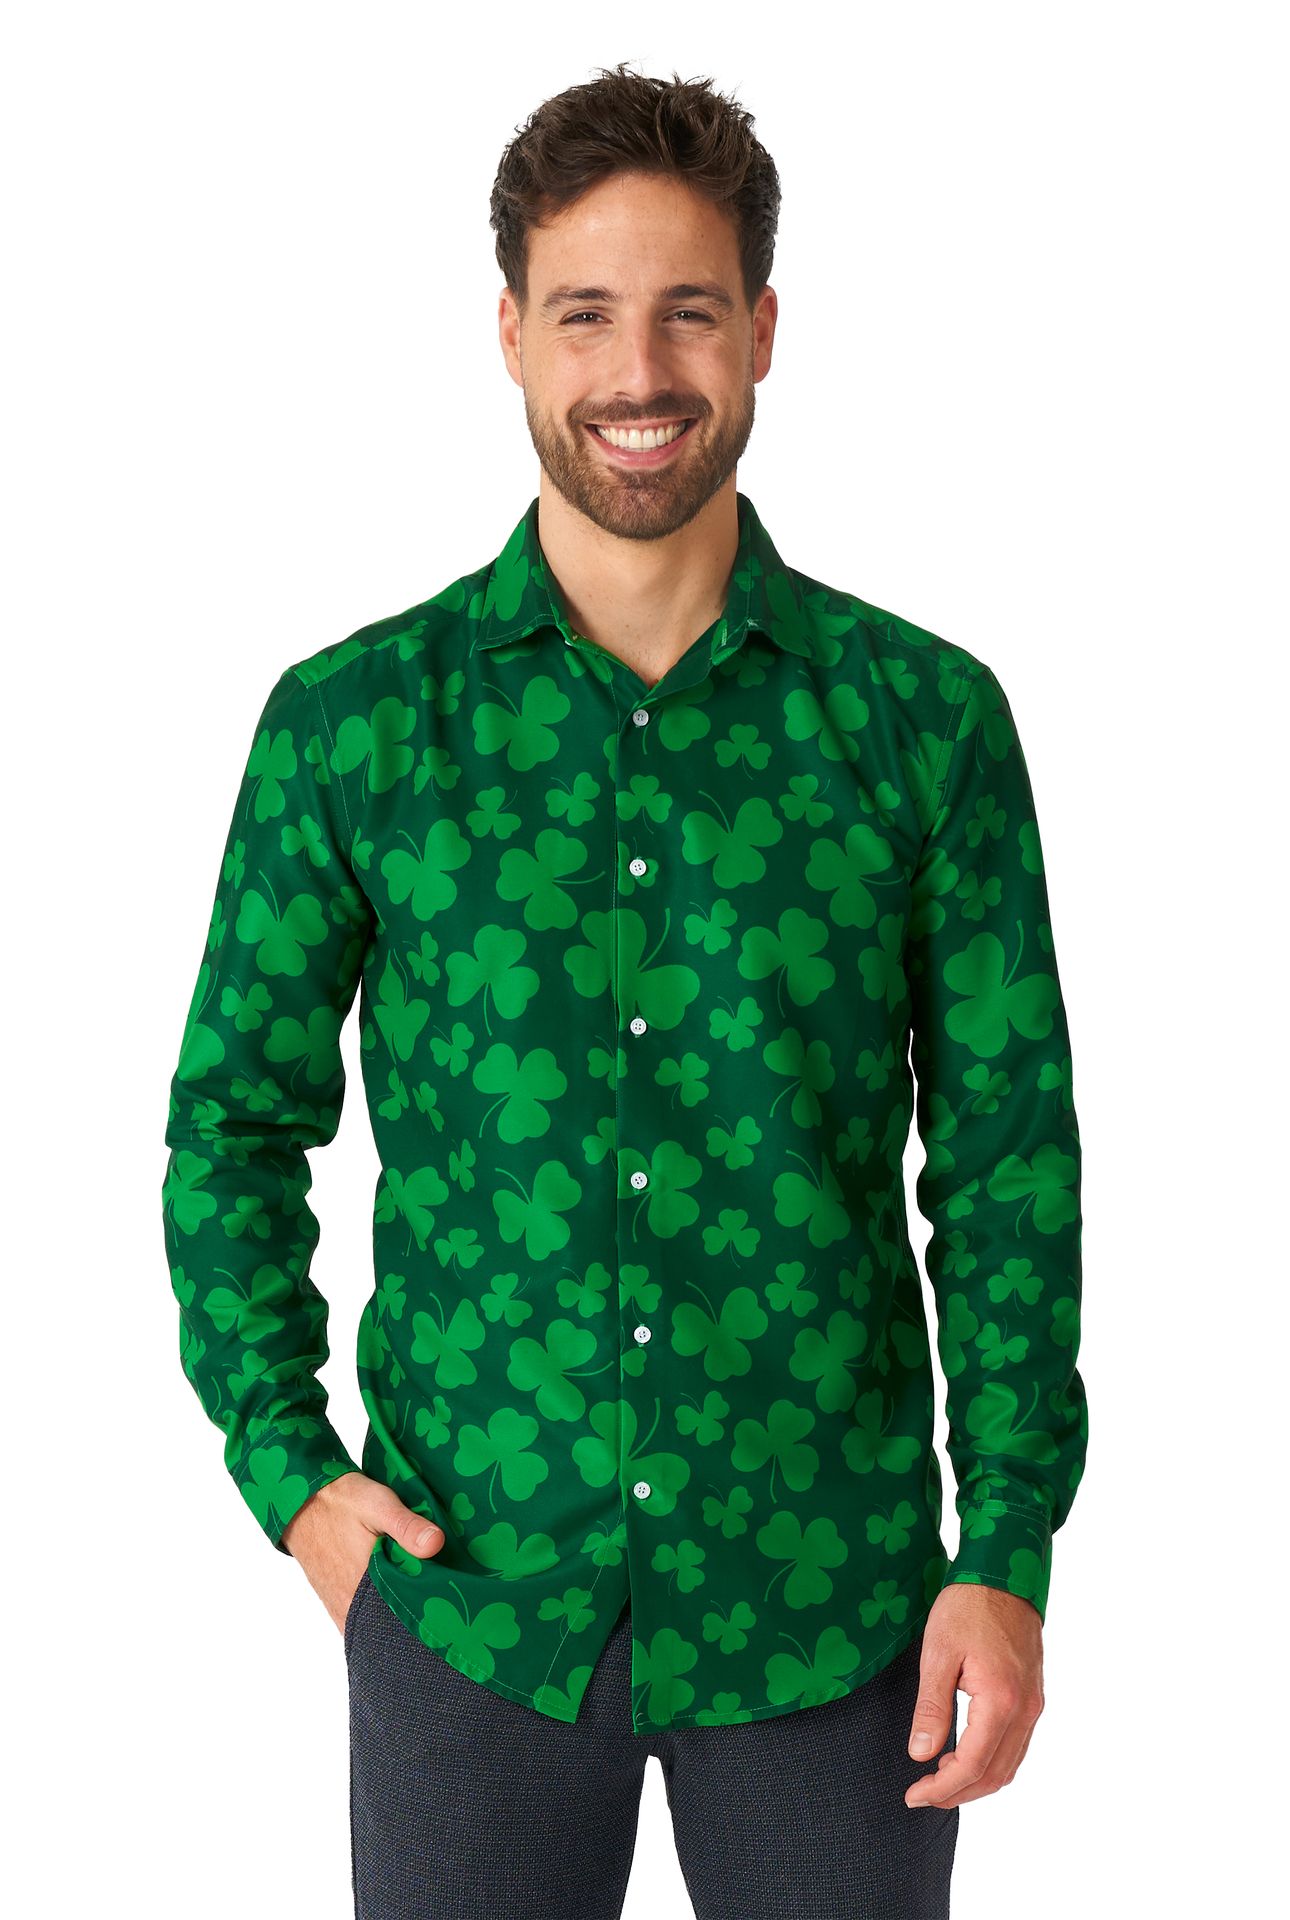 St. Patricksday groene blouse heren